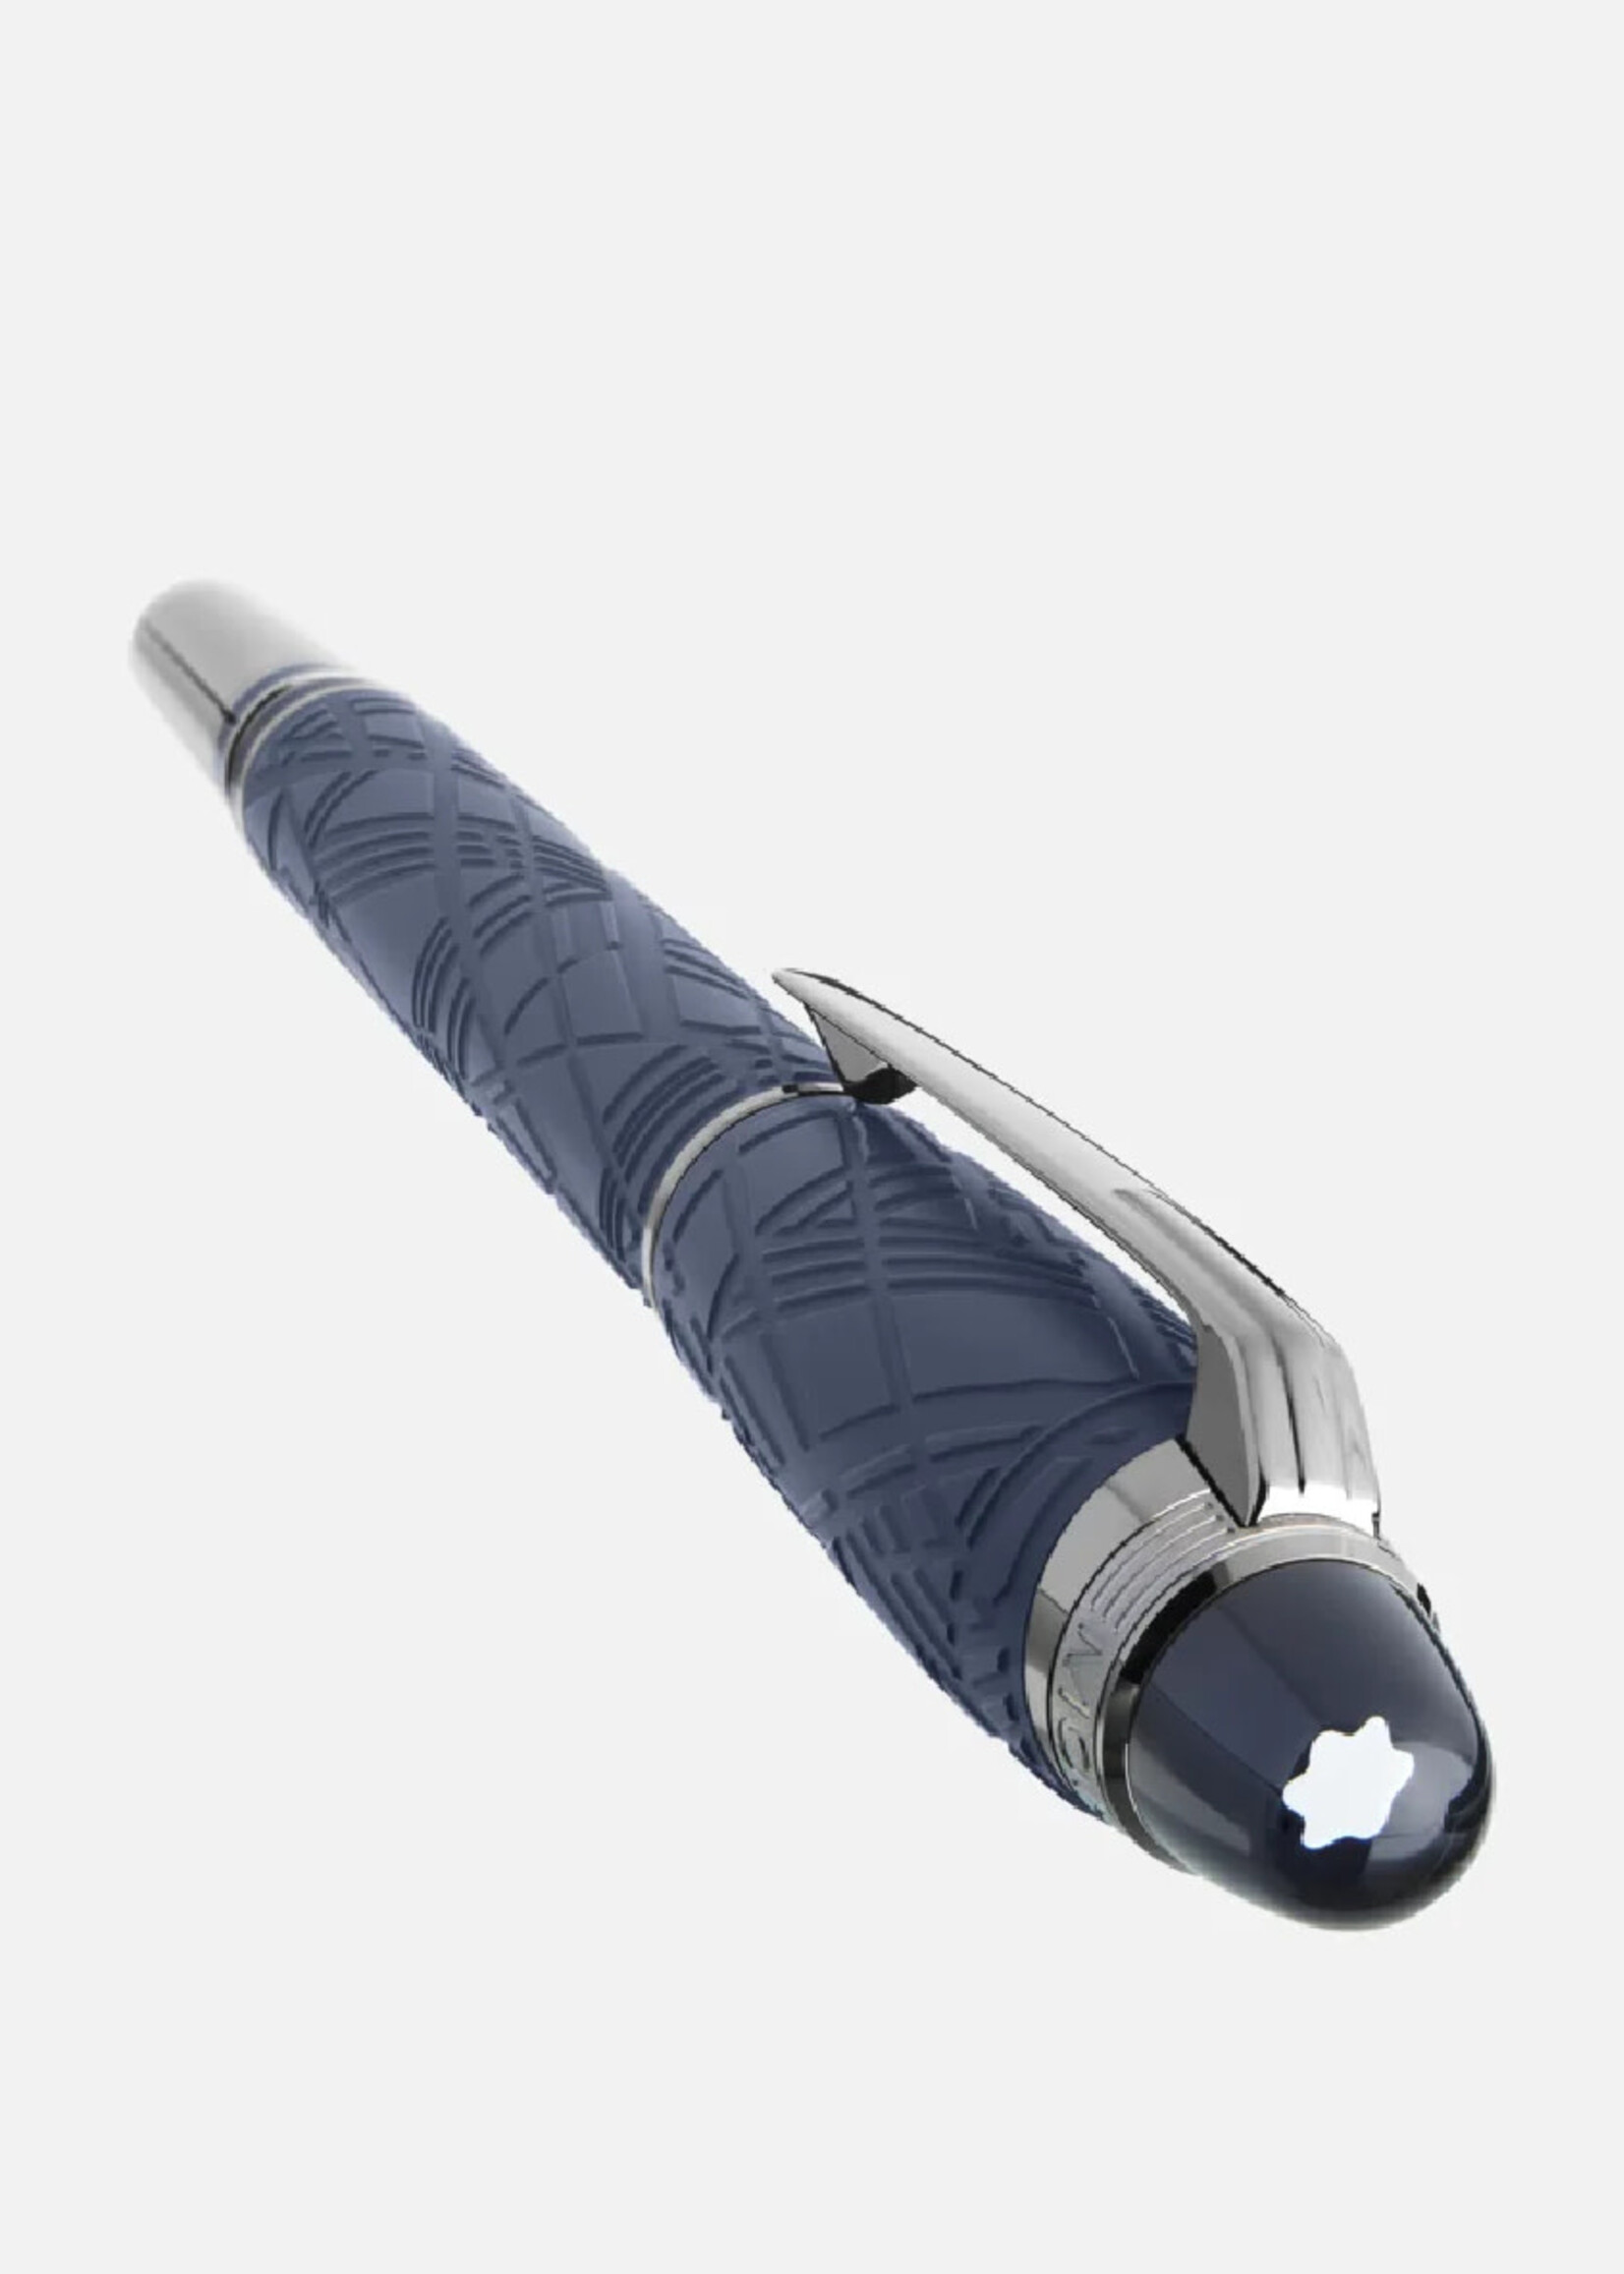 MONTBLANC Starwalker SpaceBlue Resin Vulpen M - Medium 0.62 mm